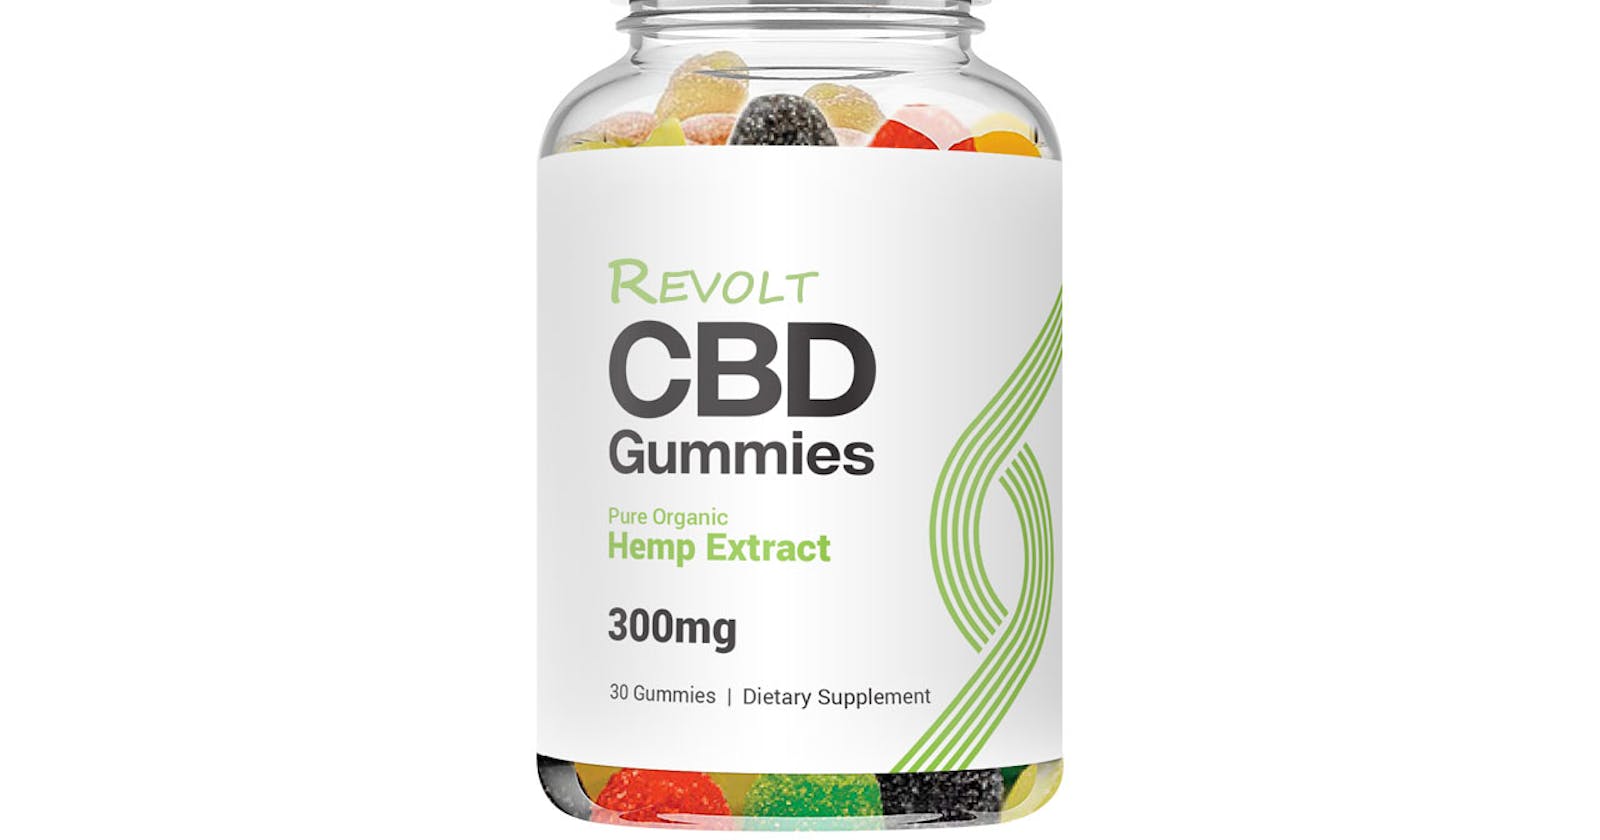 Revolt CBD Gummies Supplement Ingredients That Work or Not ?